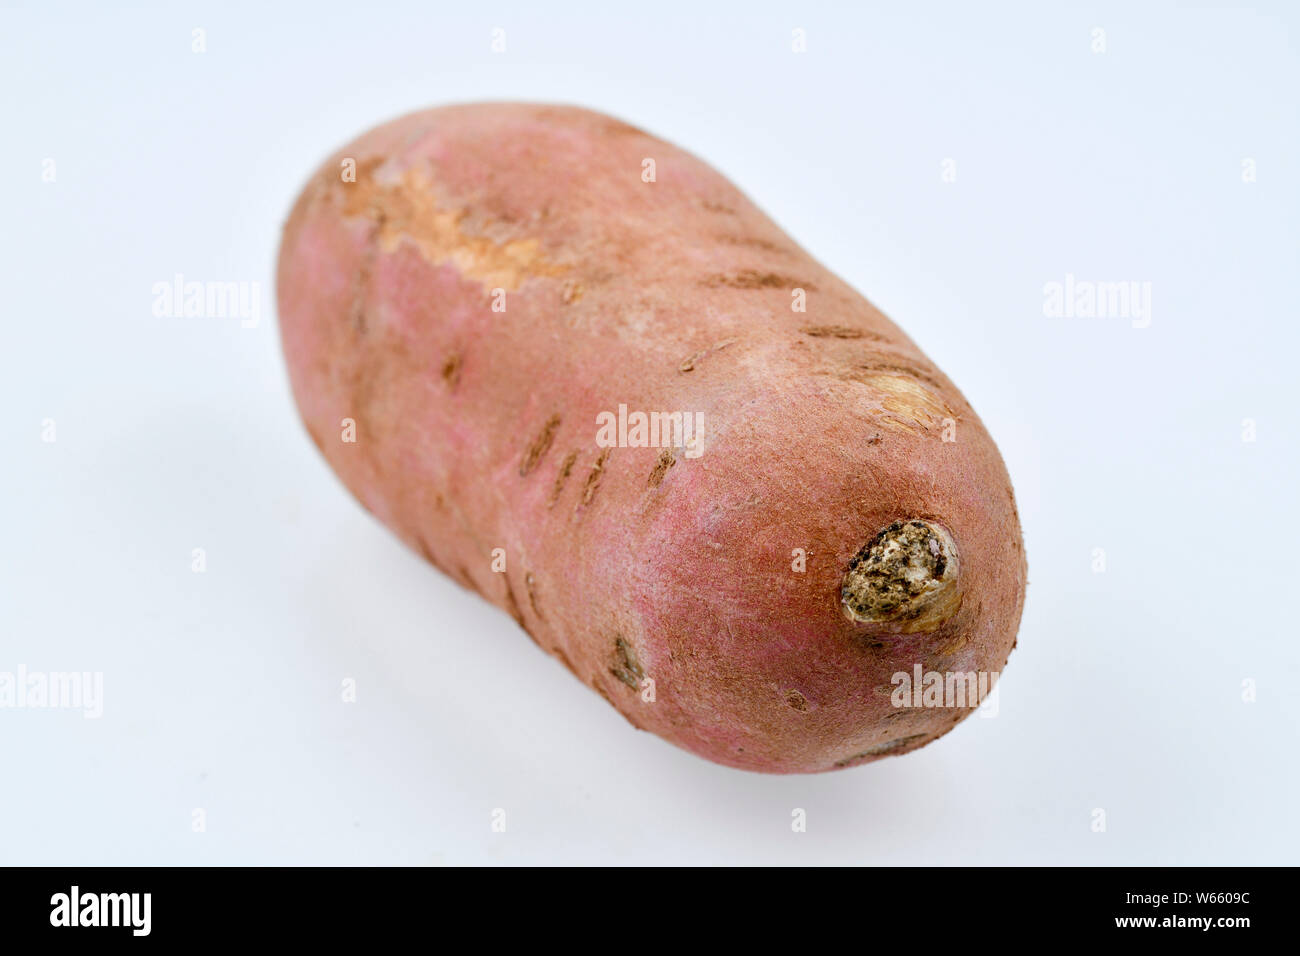 sweet potato, Ipomoea batatas Stock Photo